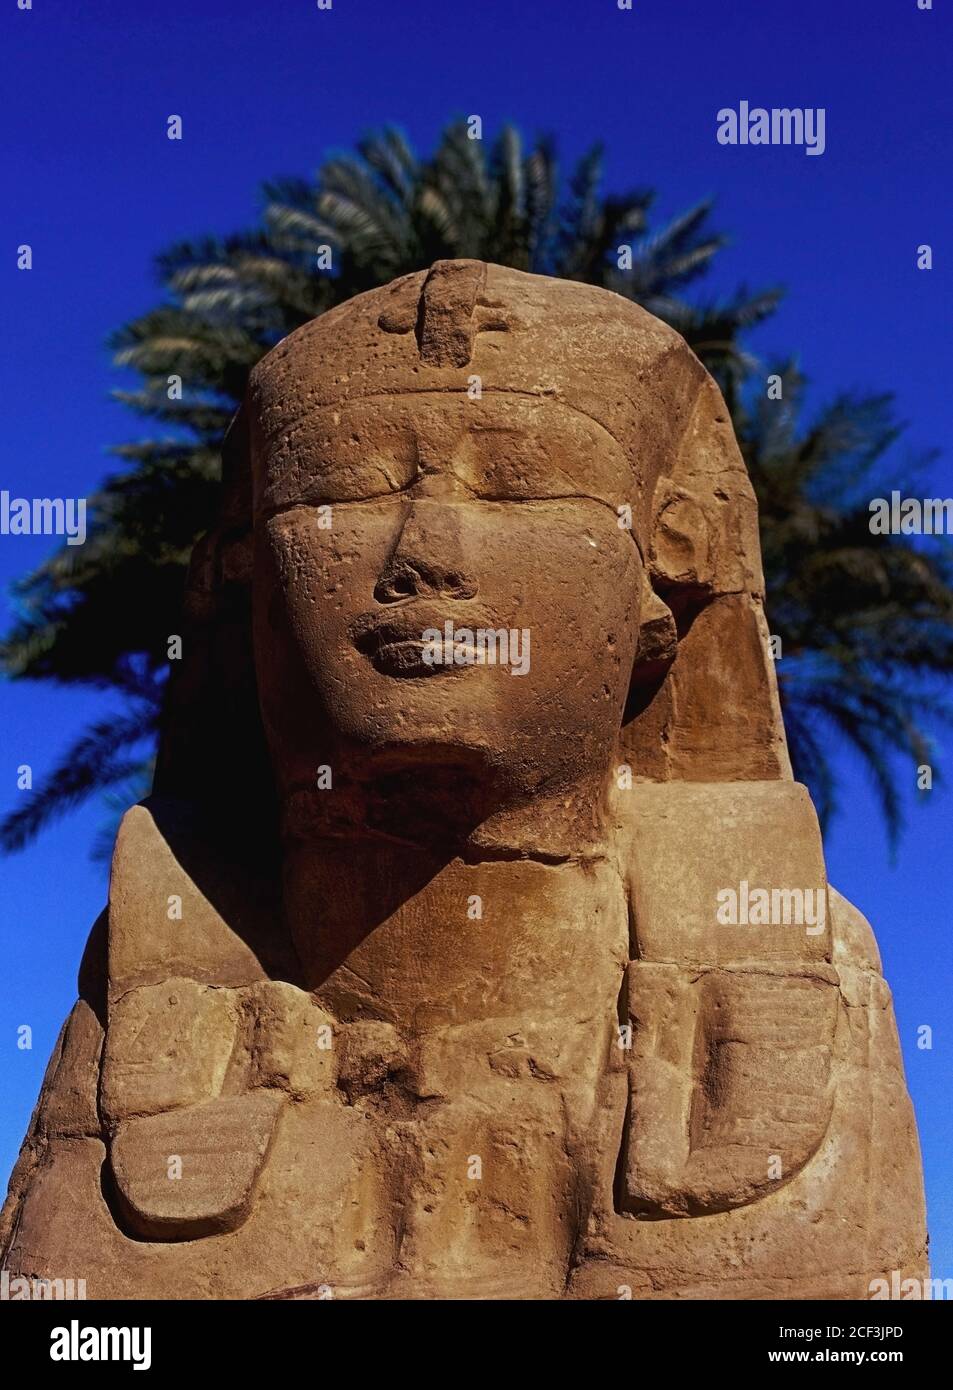 Un alone di fronde di palme incornicia il volto umano di una sfinge che sembra sognare attraverso i molti secoli da quando è stato collocato nel viale 3 km (1.5 mi) di Sphinxes, Parte del percorso processionale che collega il Tempio di Luxor con il Tempio di Karnak a Luxor, governatore di Luxor, Egitto. Il viale fu completato durante il regno del tardo periodo del 30esimo sovrano della dinastia, il faraone Nectanebo i, da circa 379 AC a 362 AC. Circa 1,350 sfingi di pietra erano usati per allineare il viale, ma molti sono stati rimossi e riutilizzati durante i periodi romano e medievale. Foto Stock